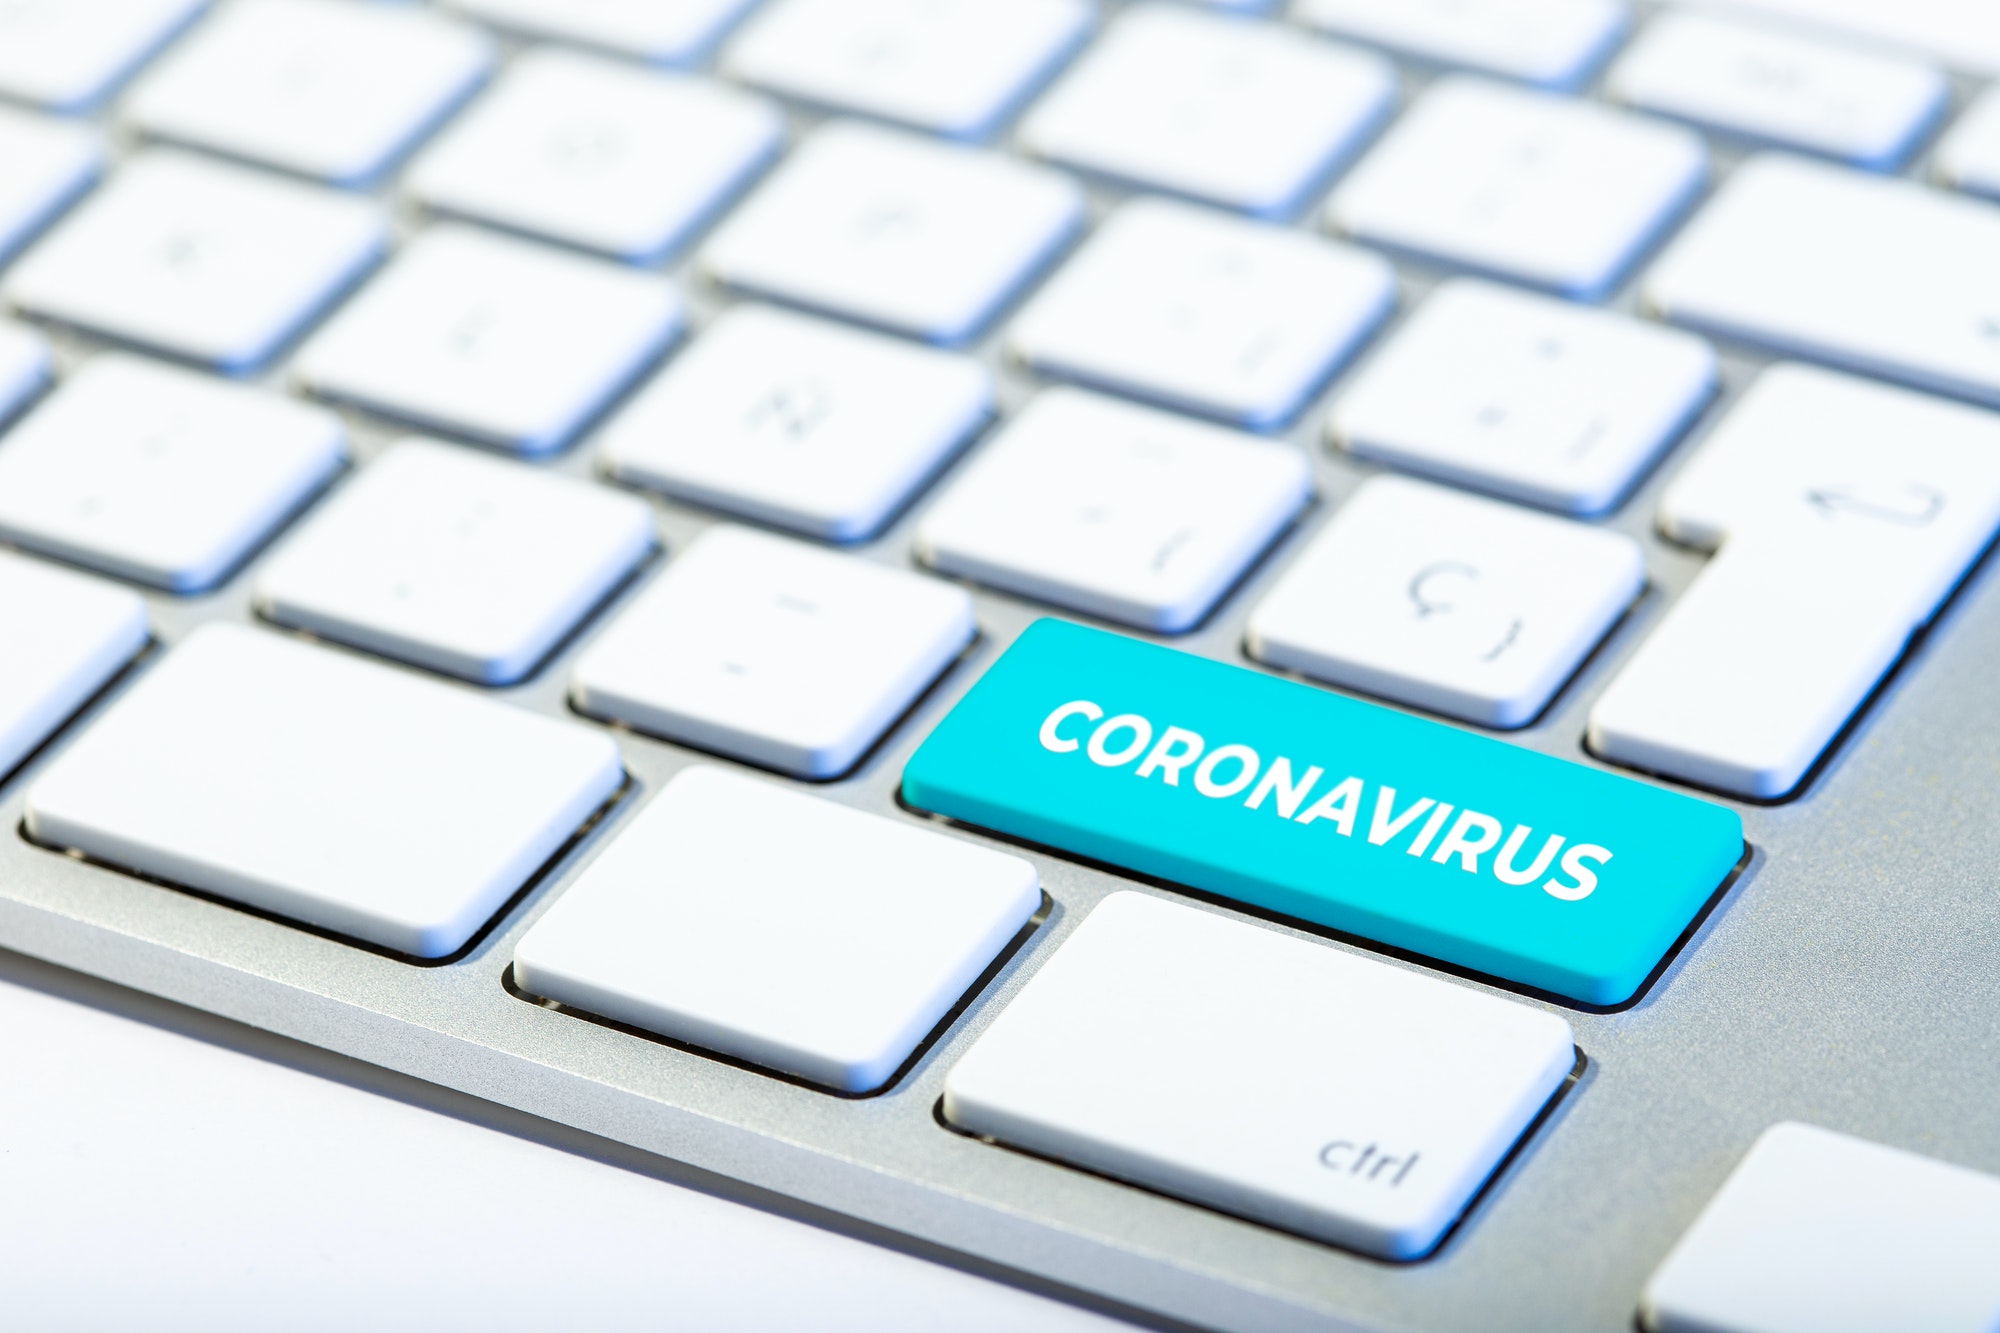 Coronavirus COVID-19 outbreak concept